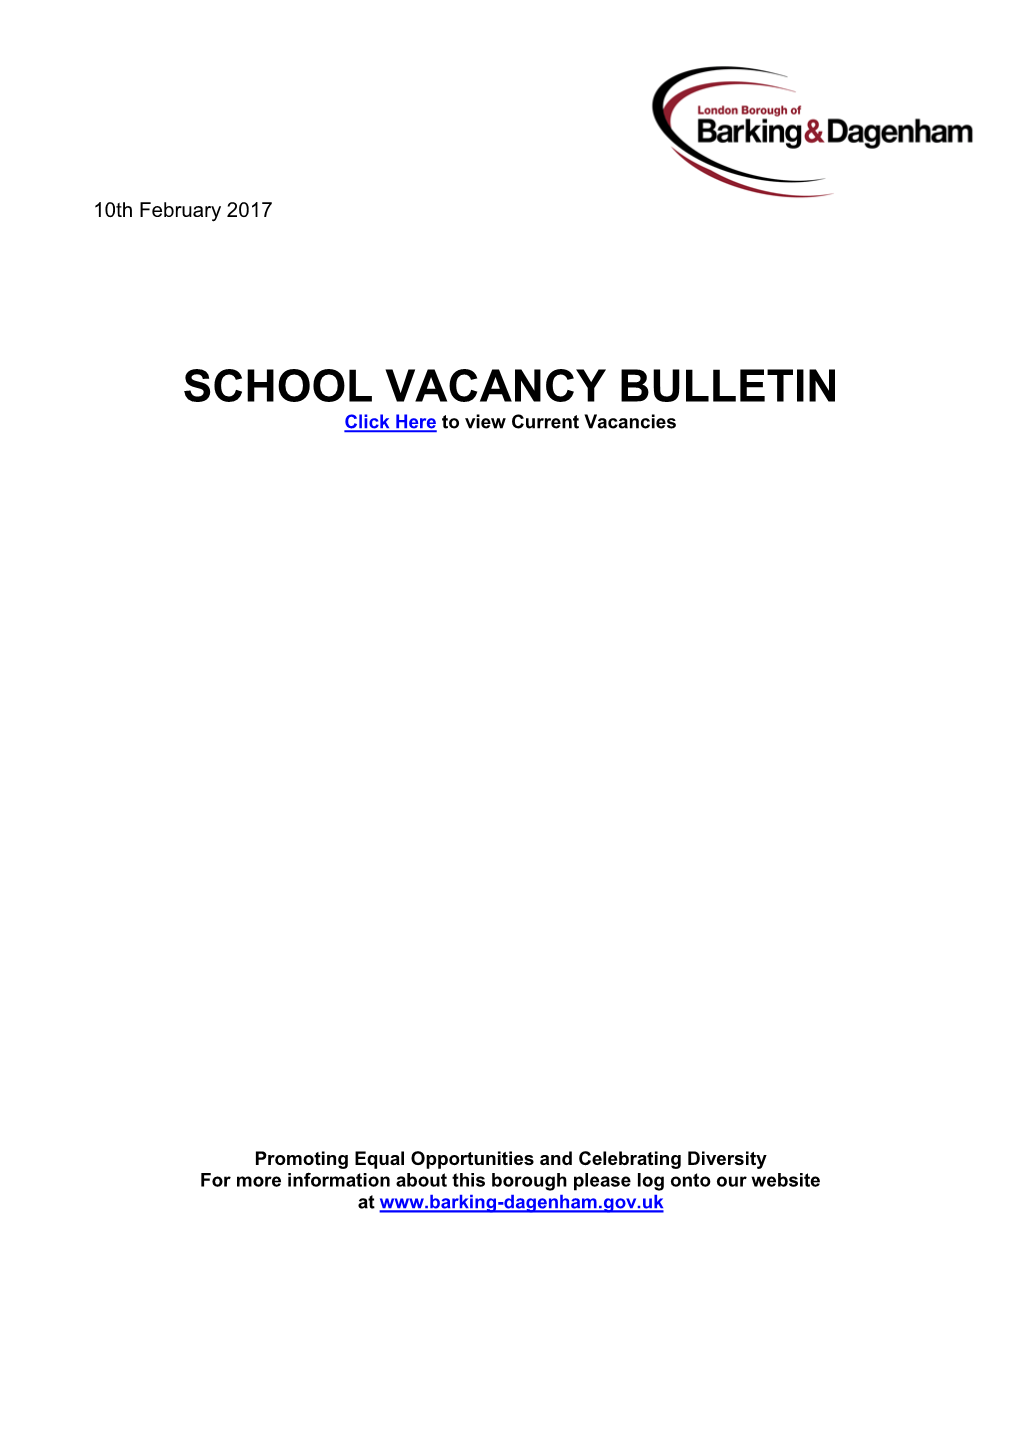 SCHOOL VACANCY BULLETIN Click Here to View Current Vacancies